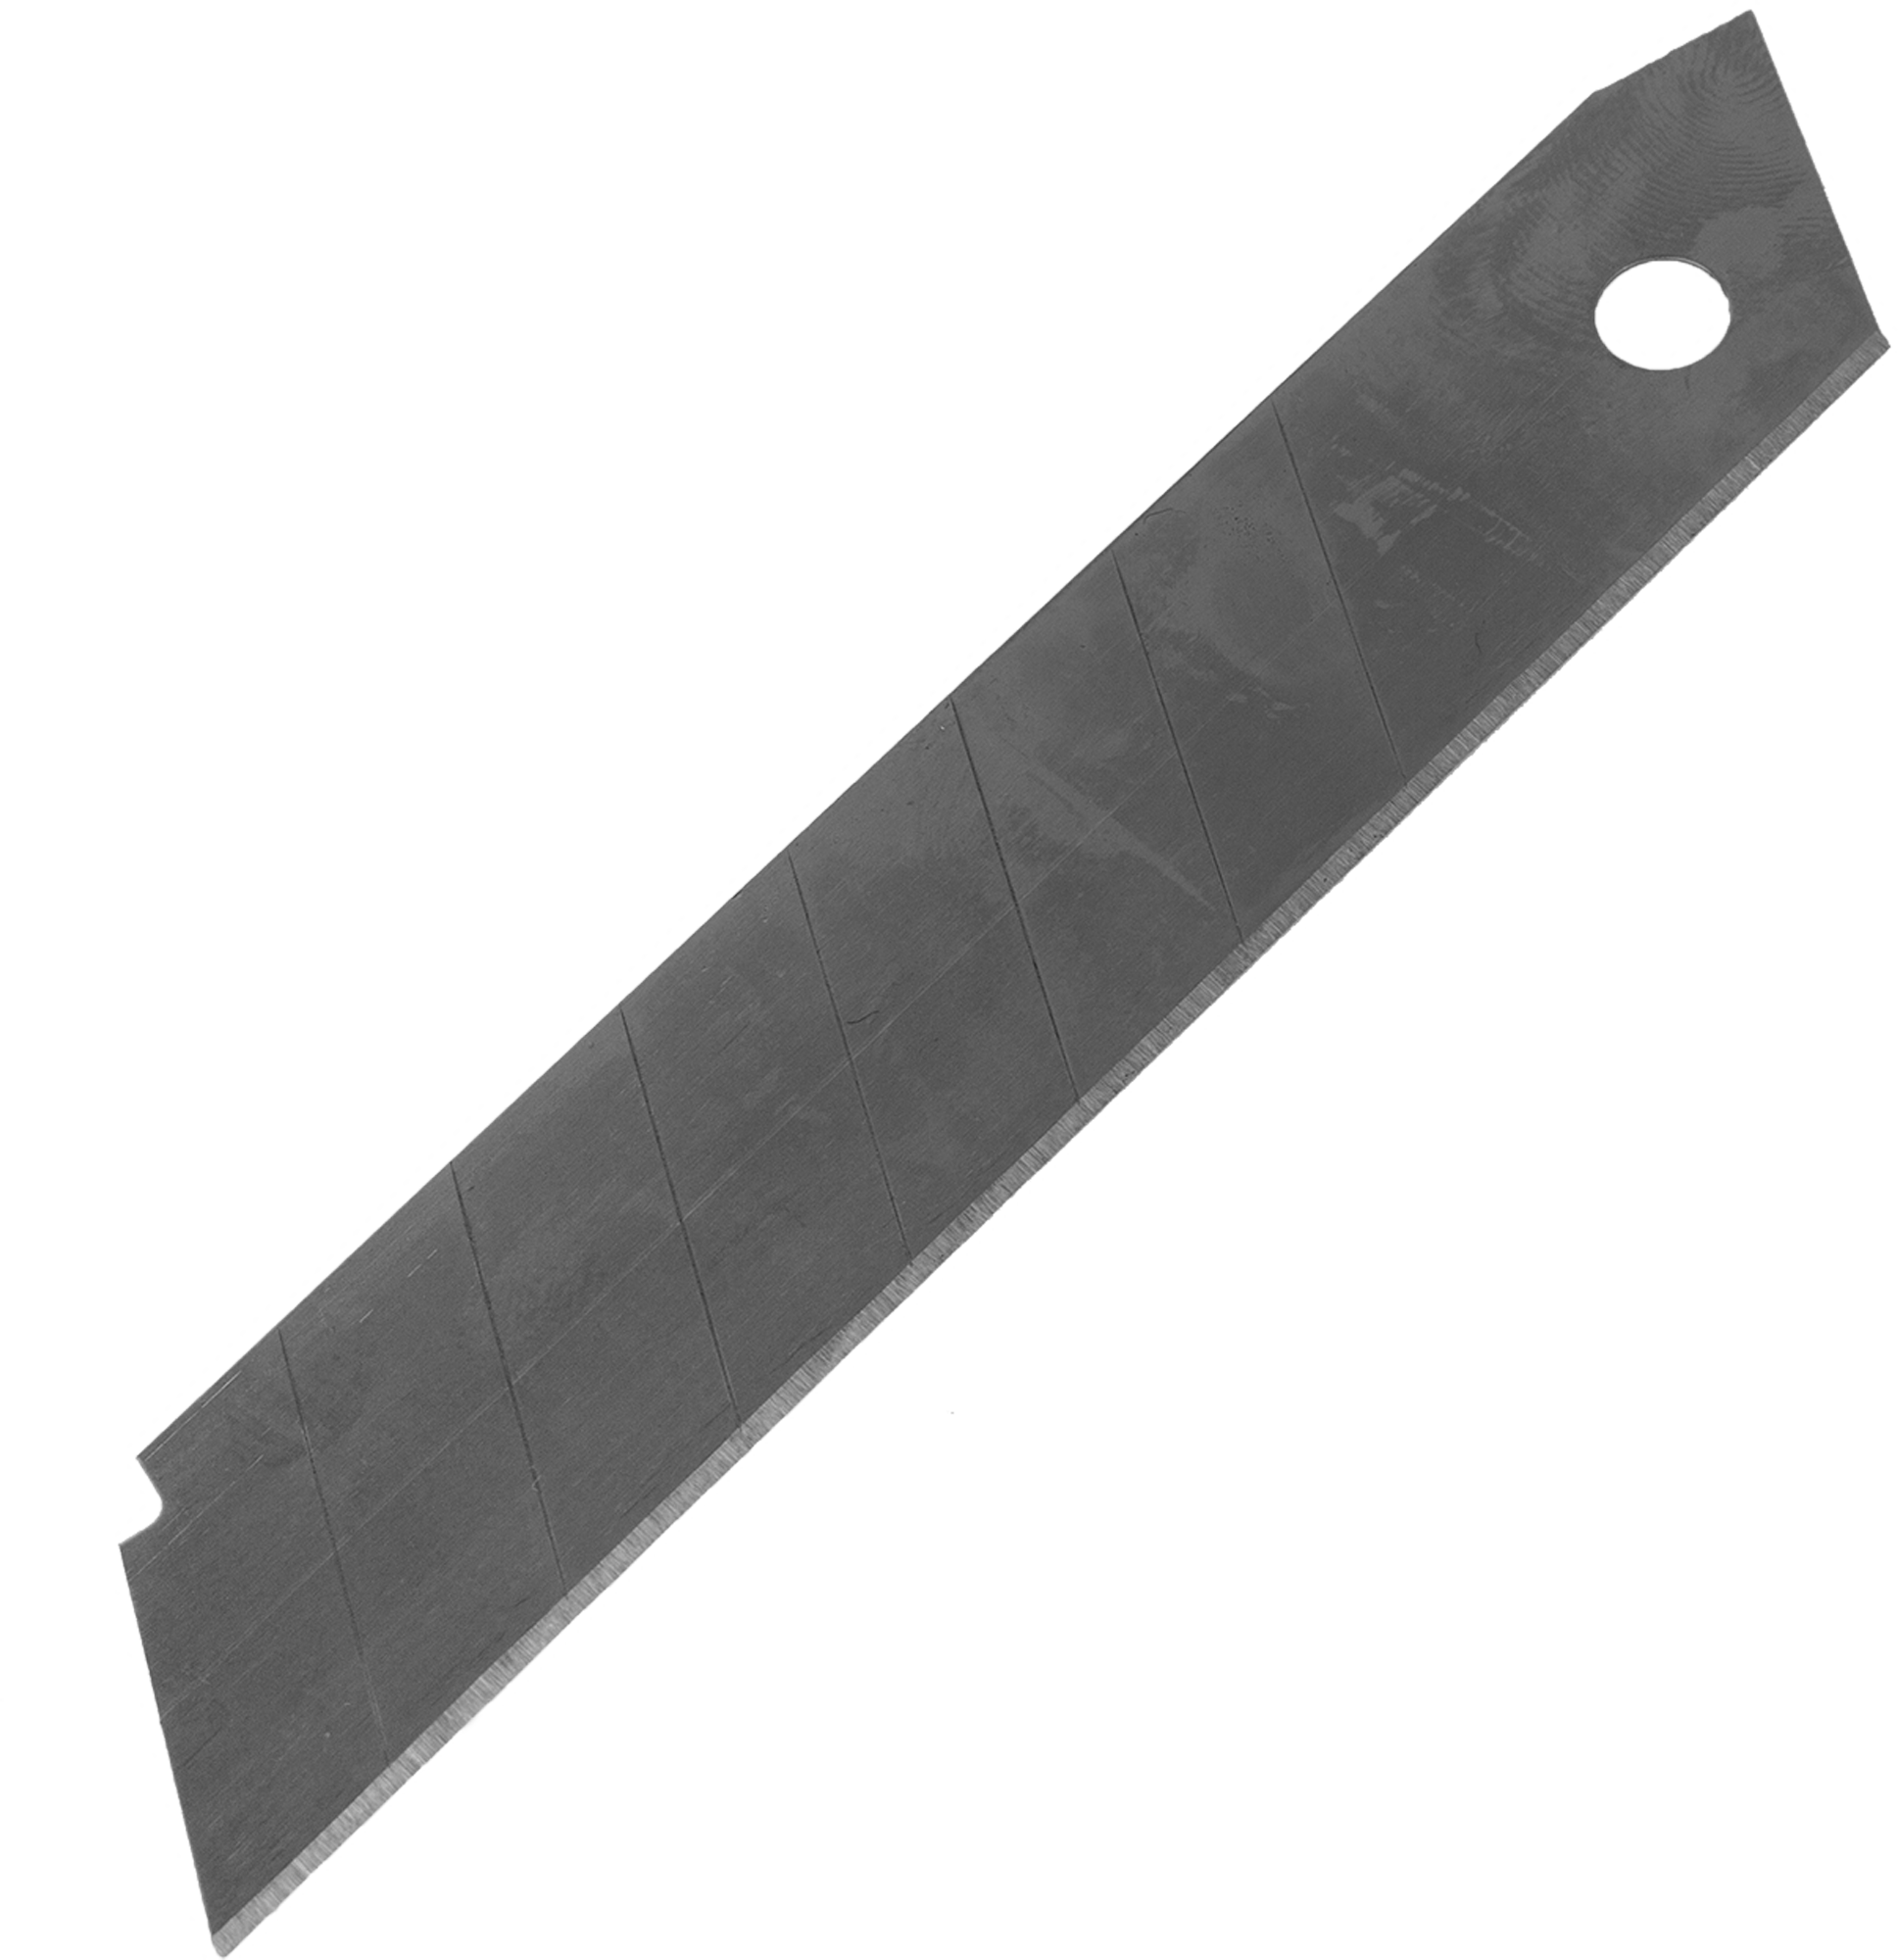 Купить лезвия для ножа 18 мм. Лезвие для ножа 18мм, 10шт Sparta. Лезвия для ножа Systec 18 мм, 10 шт. Лезвие Sparta 18 мм. Лезвия для ножа 18 мм Sparta.